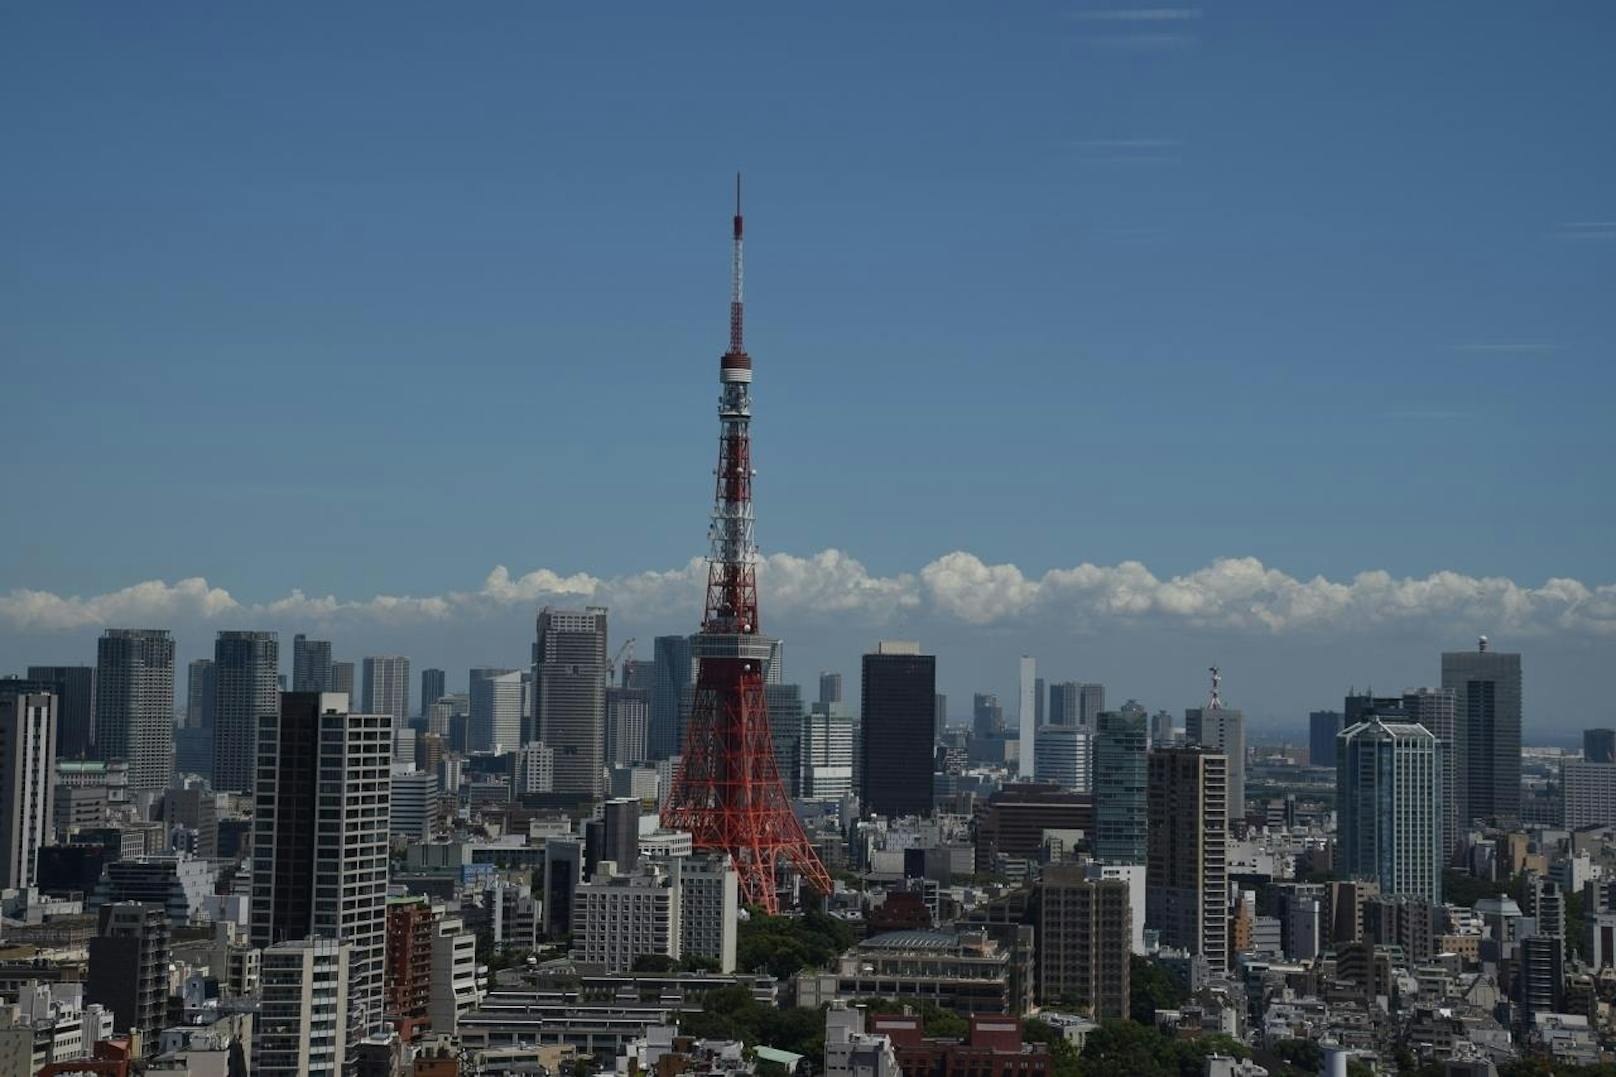 <b>Der japanische Eiffelturm:</b>
Der eine entstand 1887, der andere 1958, der eine ist aus Schmiedeeisen, der andere aus Stahl und obwohl zwölf Flugstunden zwischen ihnen liegen, unterscheiden sich der weltberühmte Eiffelturm in Paris und der Tokyo Tower in Japans Hauptstadt kaum. Der Tokyo Tower, bewusst als Nachbildung erbaut, übertrifft das Pariser Original sogar bei der Gesamthöhe um knapp acht Meter.